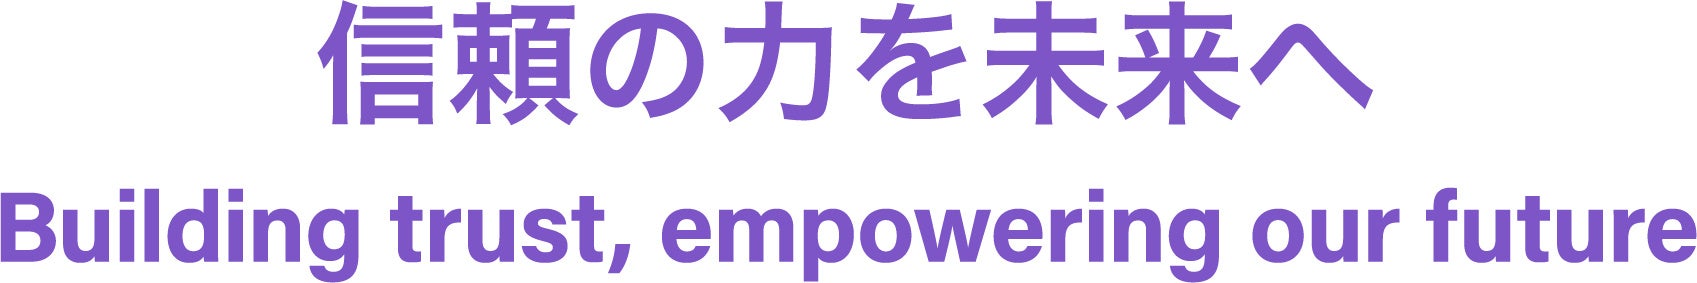 公認会計士/日本公認会計士協会の新ブランドを本格展開のサブ画像1